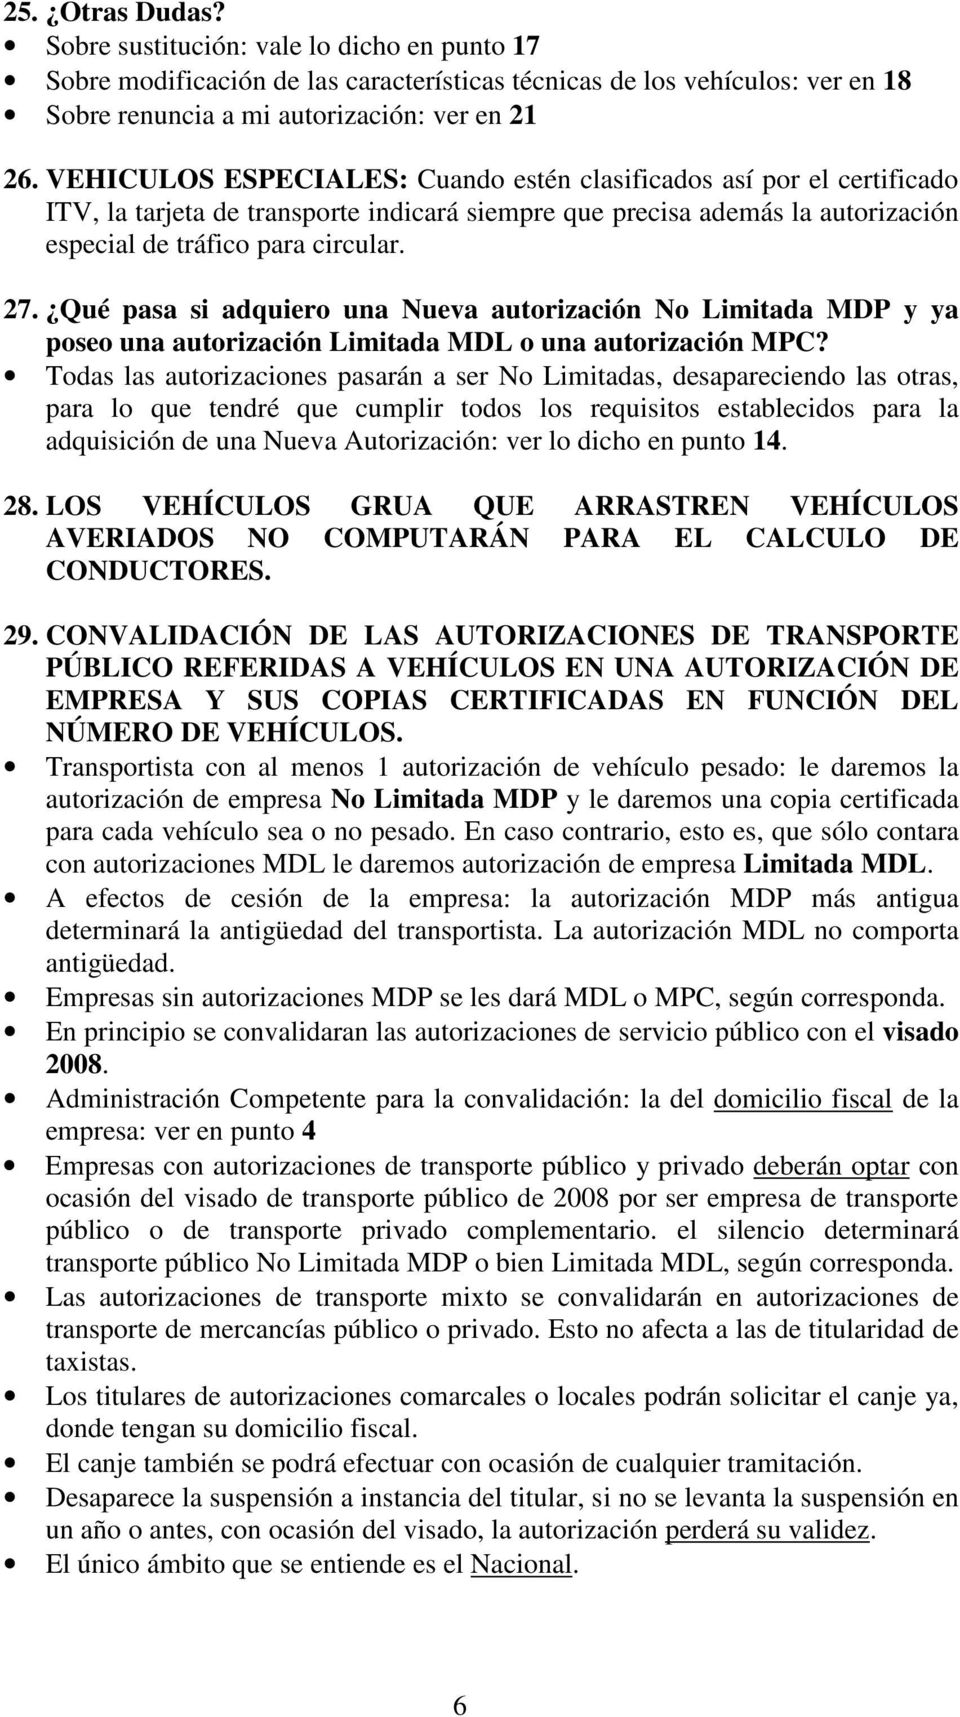 Qué pasa si adquiero una Nueva autorización No Limitada MDP y ya poseo una autorización Limitada MDL o una autorización MPC?